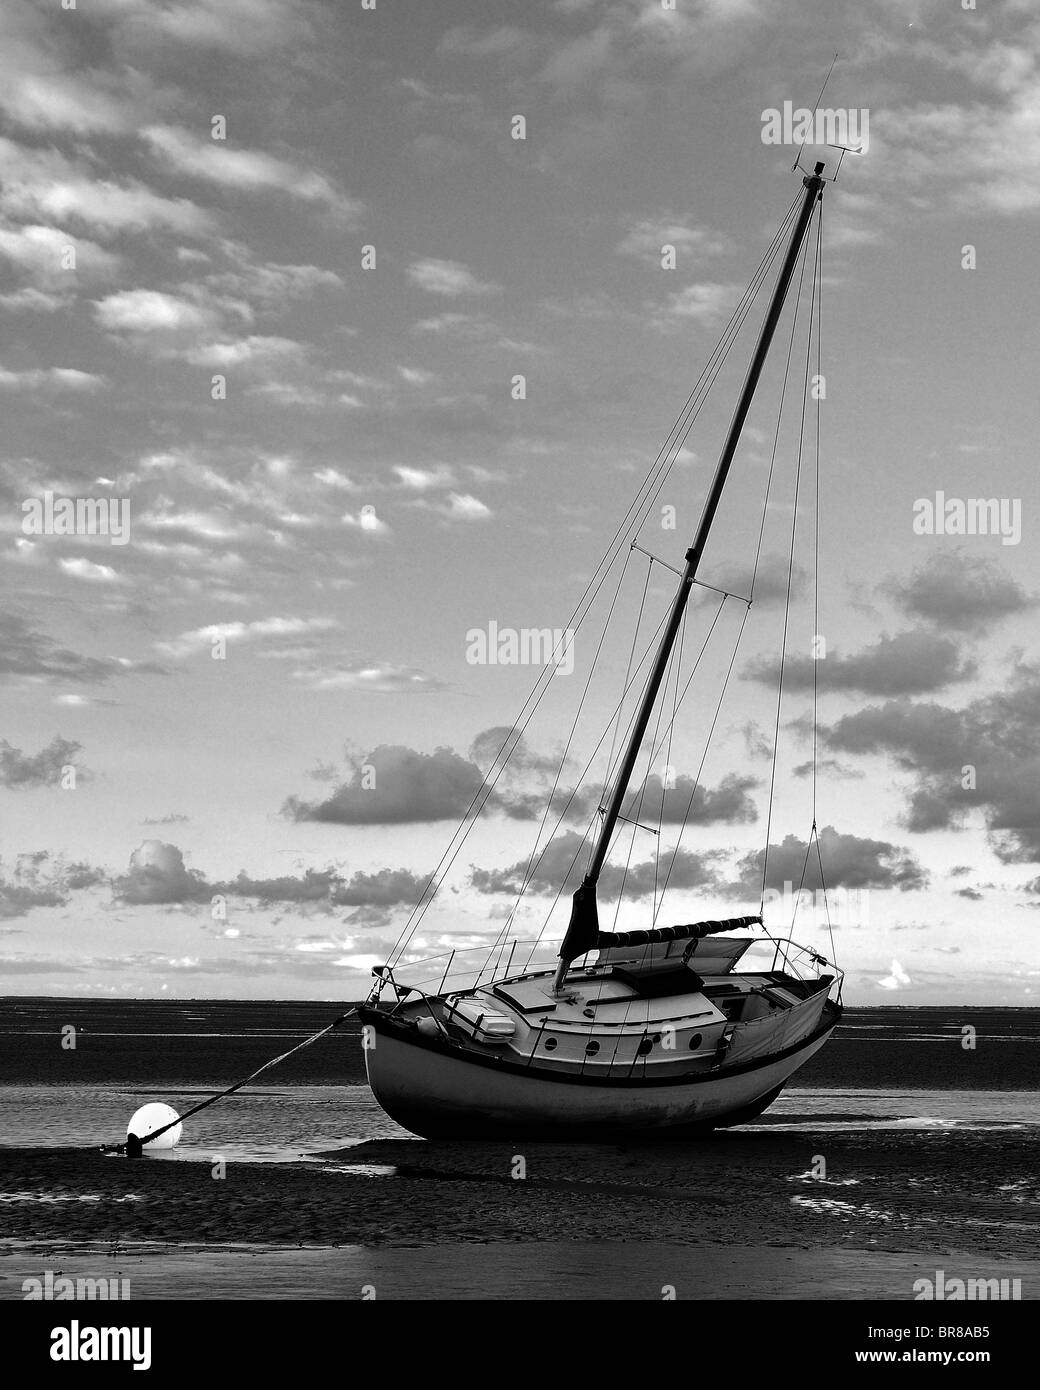 Tramonto in barca a bassa marea nuvole di sabbia illuminazione soffusa Foto Stock